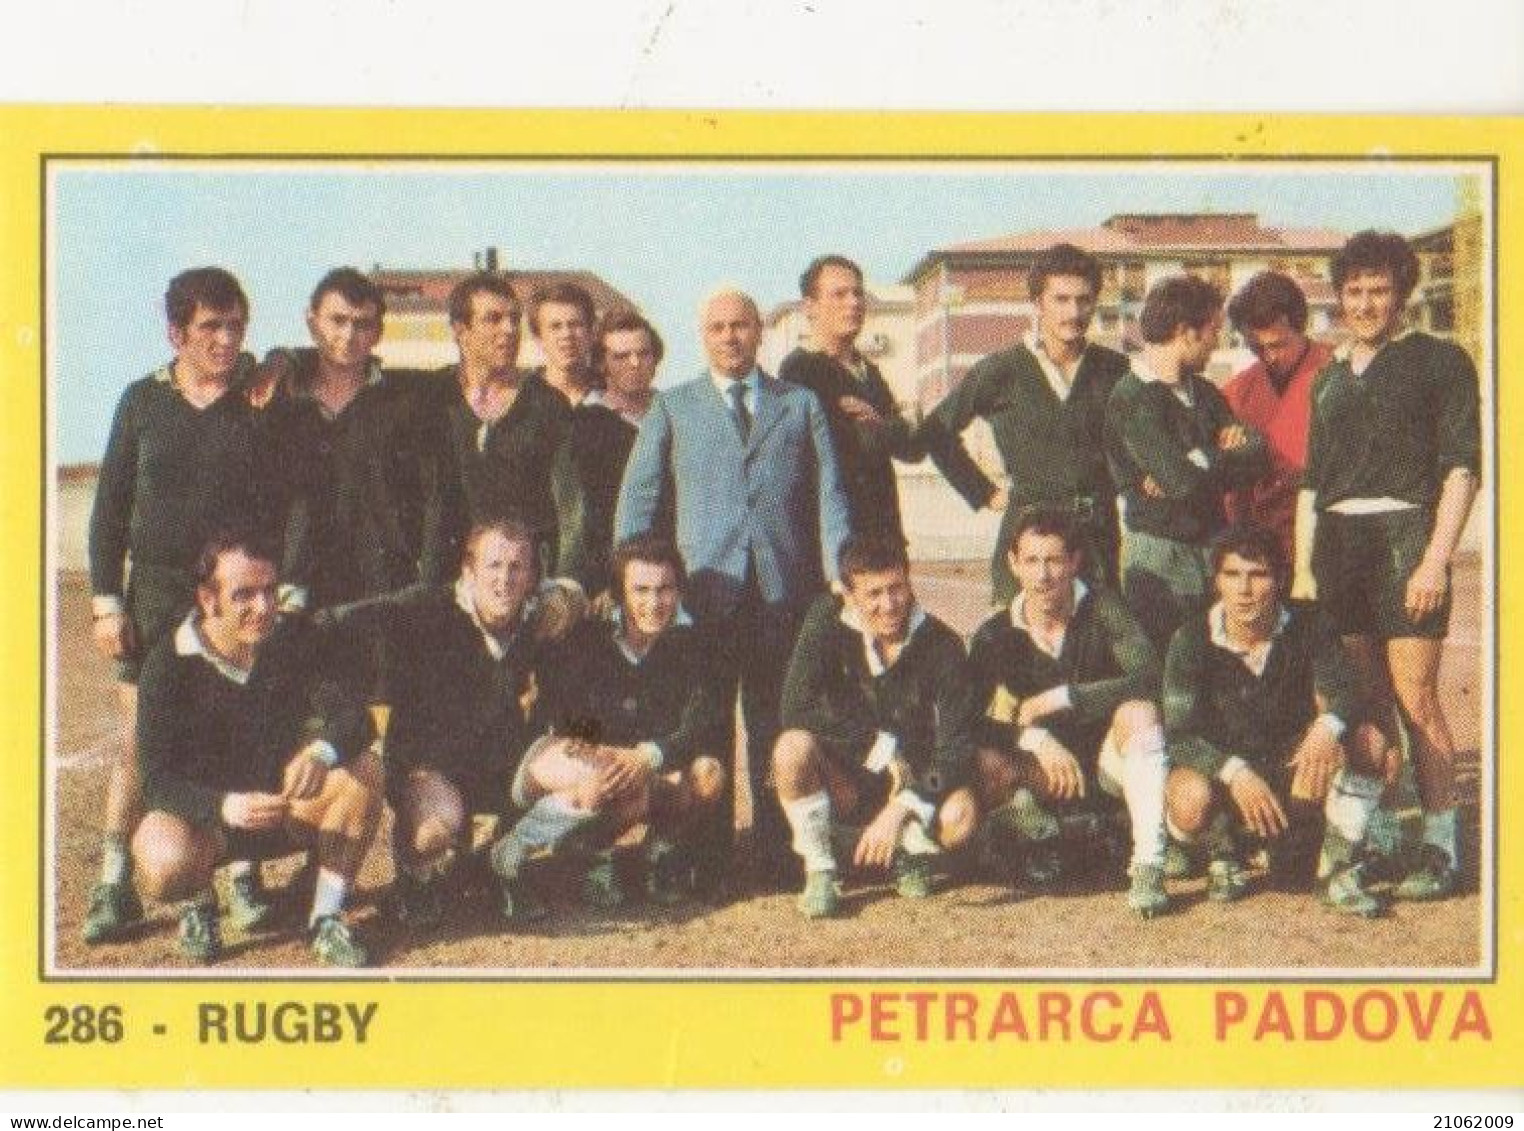 286 SQUADRA TEAM PETRARCA PADOVA - RUGBY - CAMPIONI DELLO SPORT PANINI 1970-71 - Rugby